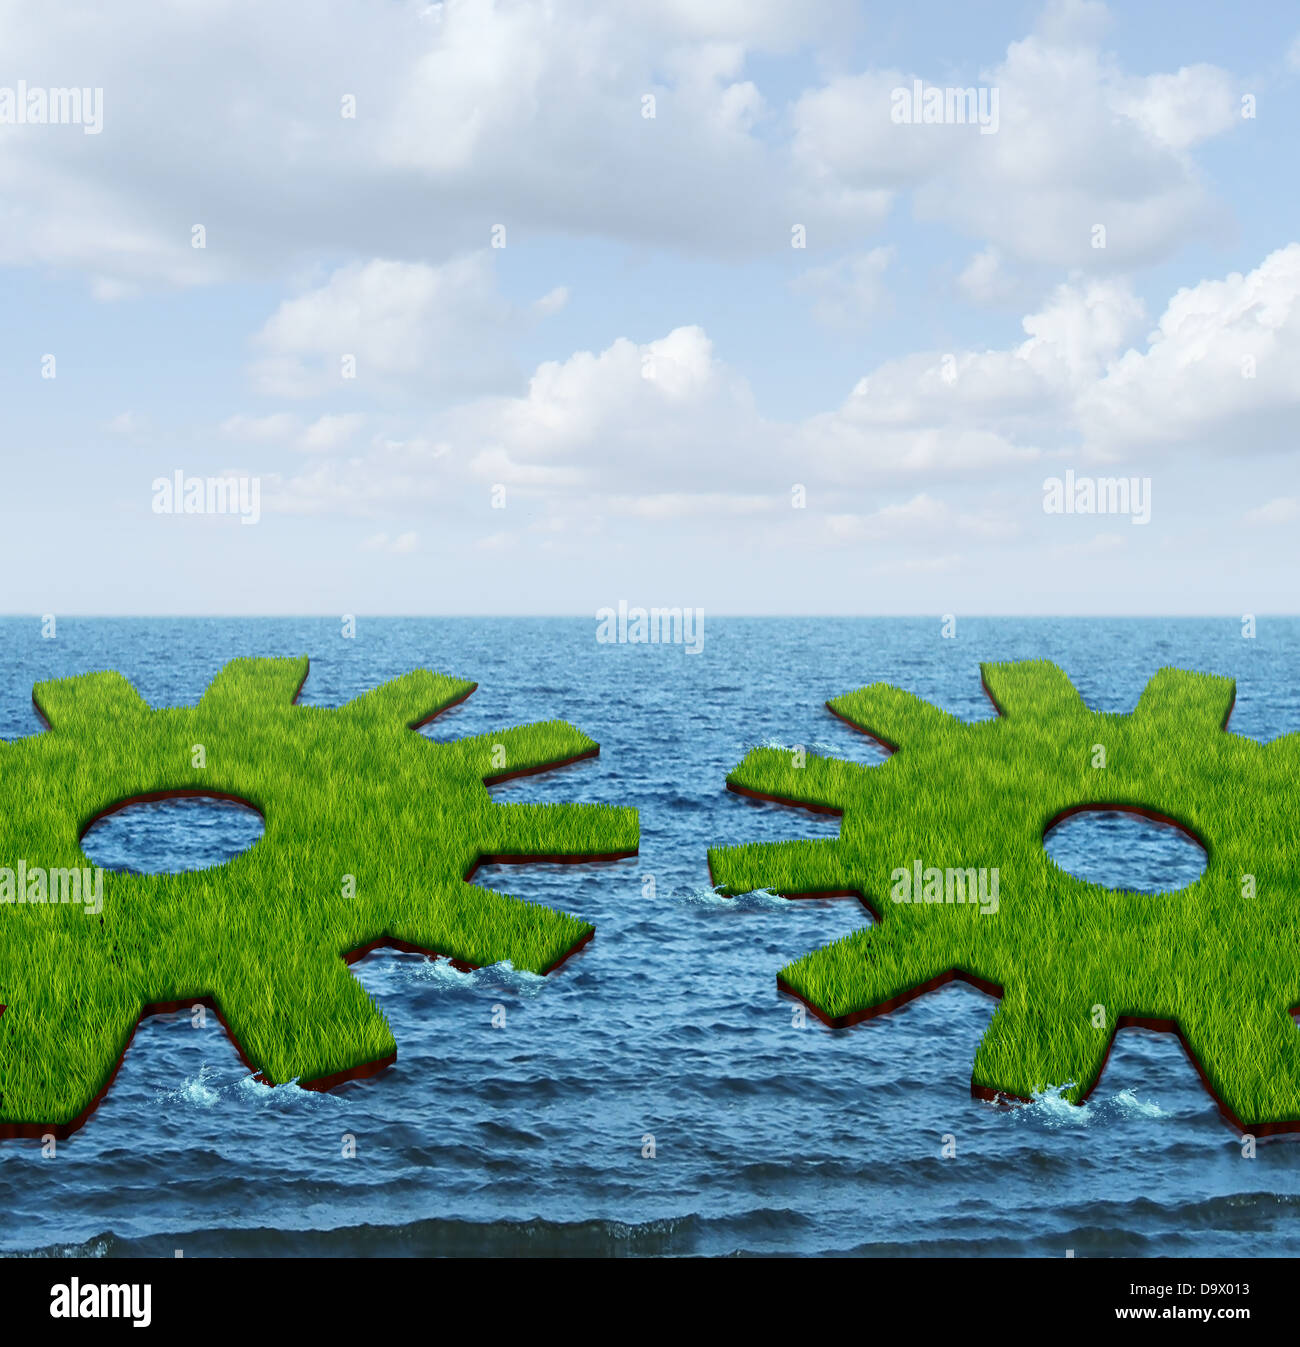 Weltweite Geschäftsbeziehungen mit zwei grünen Rasen Inseln schwimmend auf dem Ozean, geformt wie ein Zahnrad oder Zahnrad kommen zusammen, um ein internationales Netzwerk von Arbeiten für den finanziellen Erfolg am Sommerhimmel zu erstellen. Stockfoto